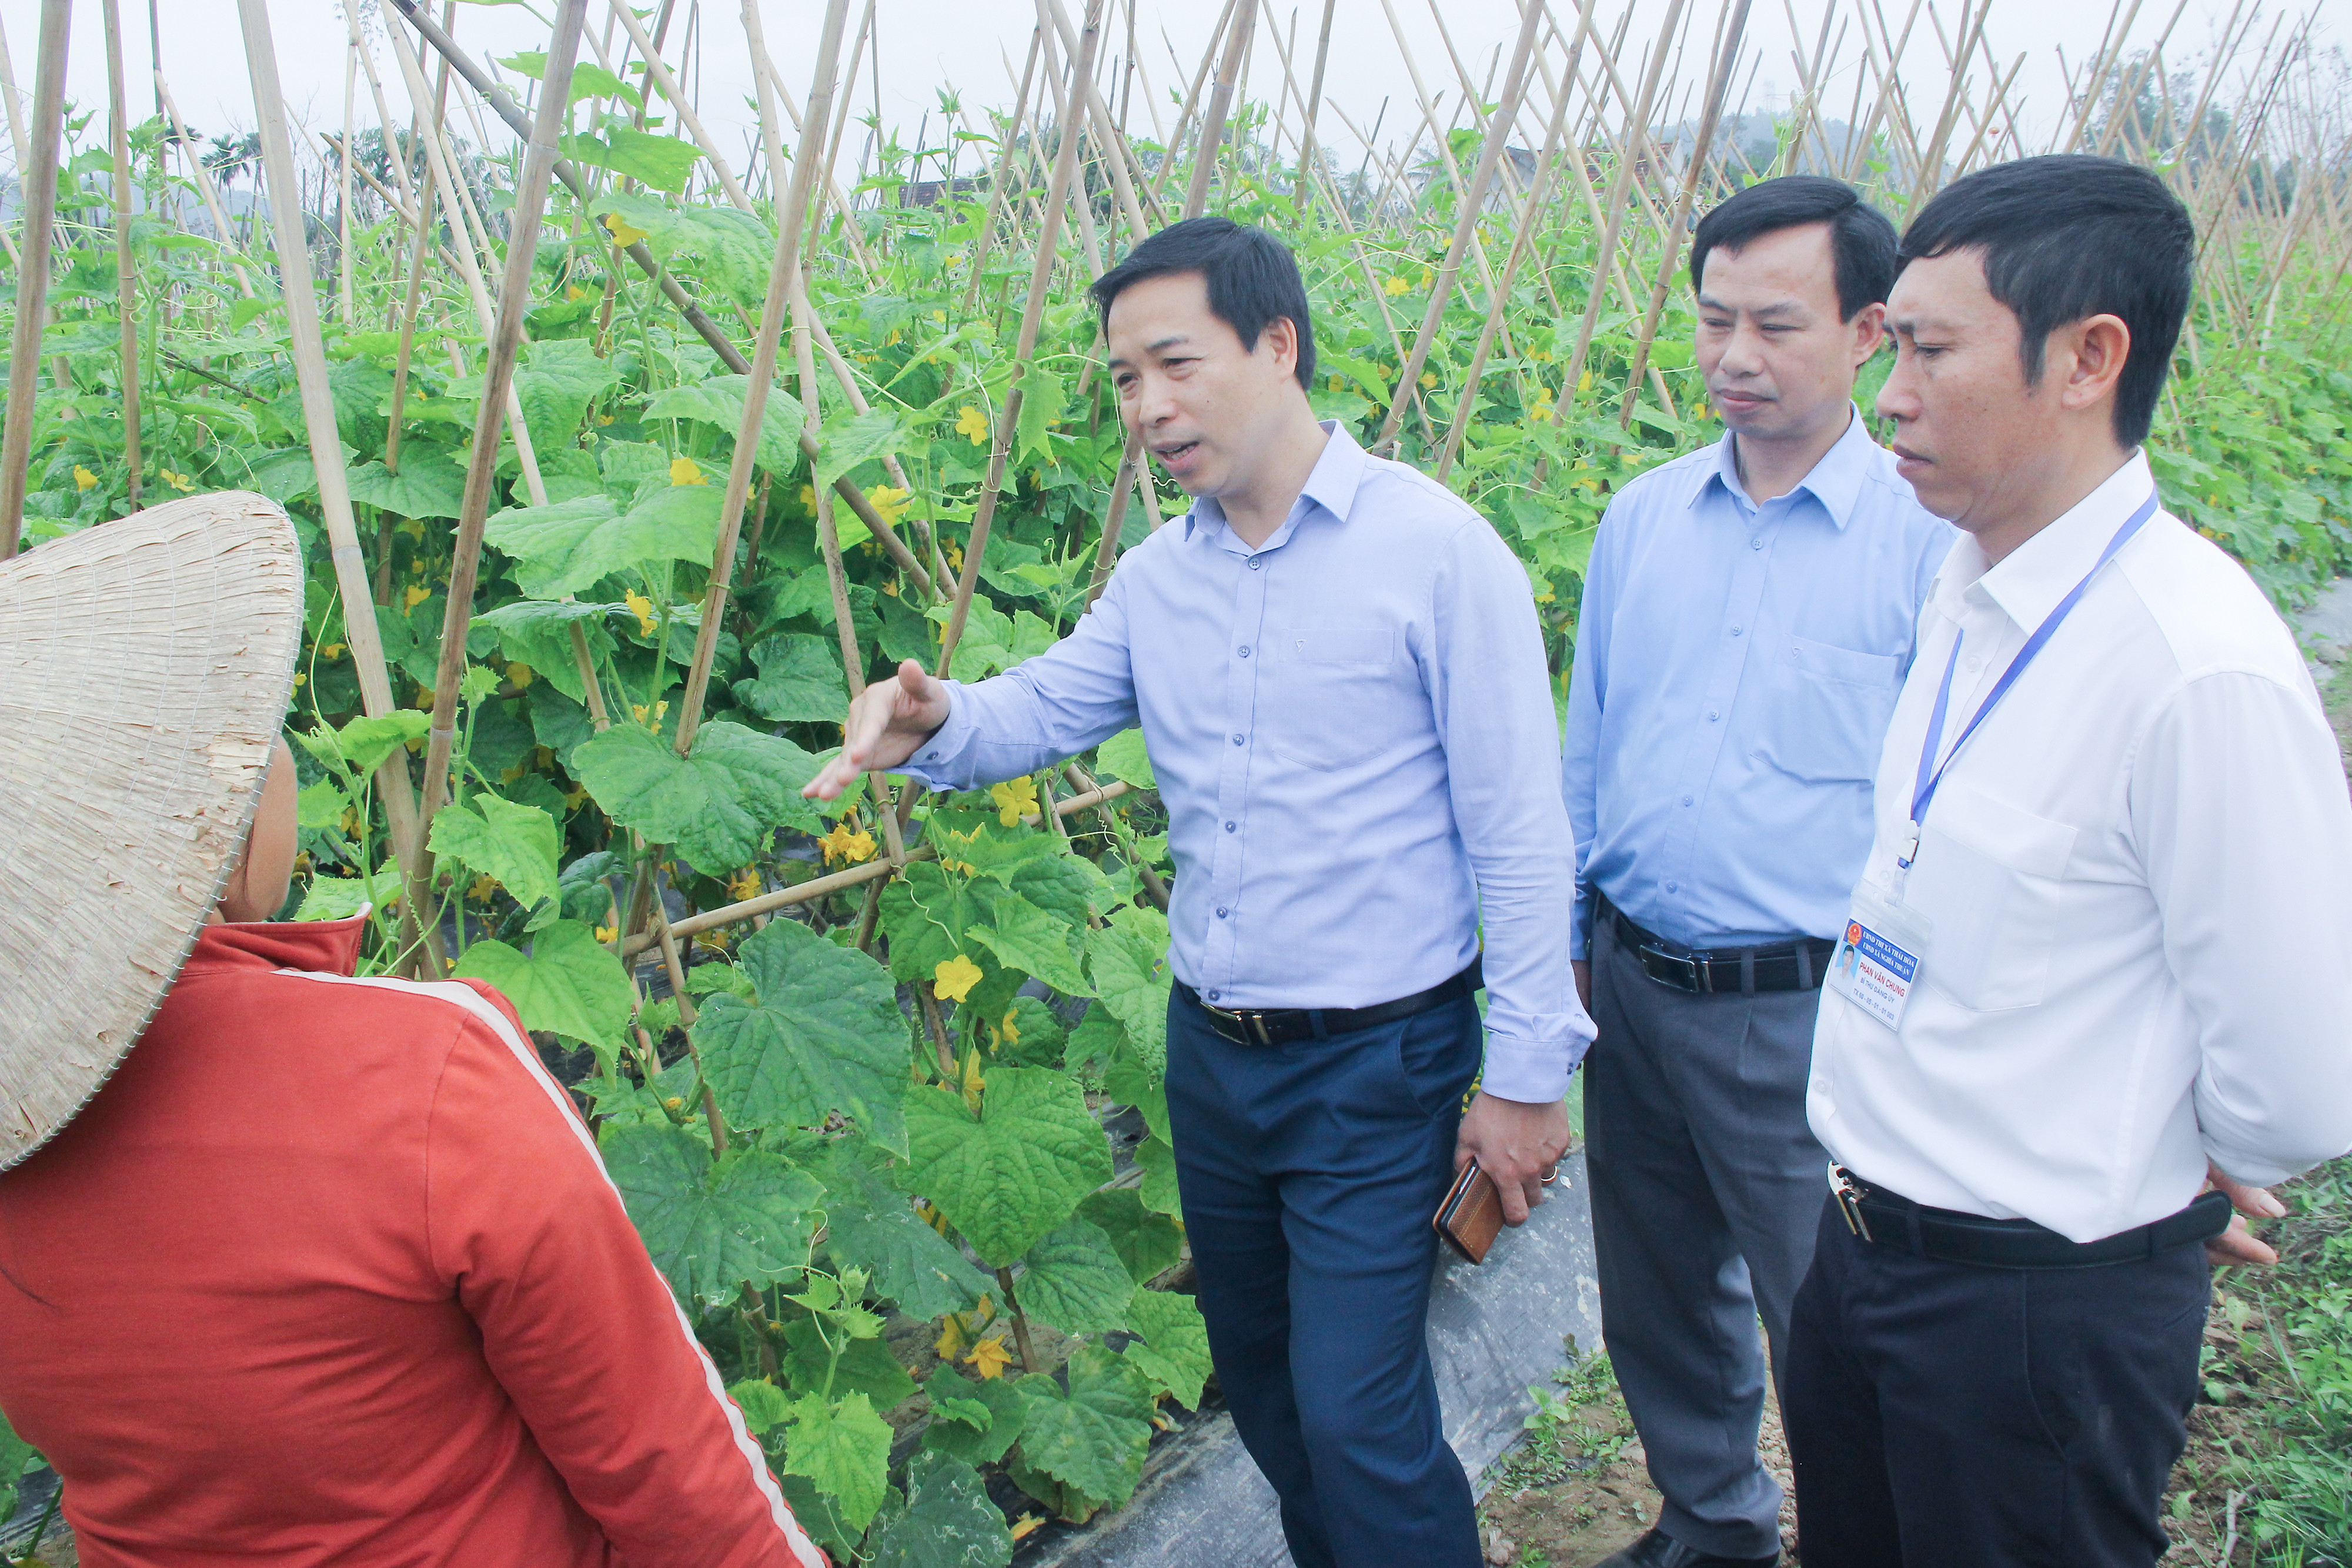 bna_ Lãnh đạo thị xã Thái Hoà tìm hiểu mô hình sản xuất nông nghiệp hàng hoá tại xã Nghĩa Thuận.jpeg